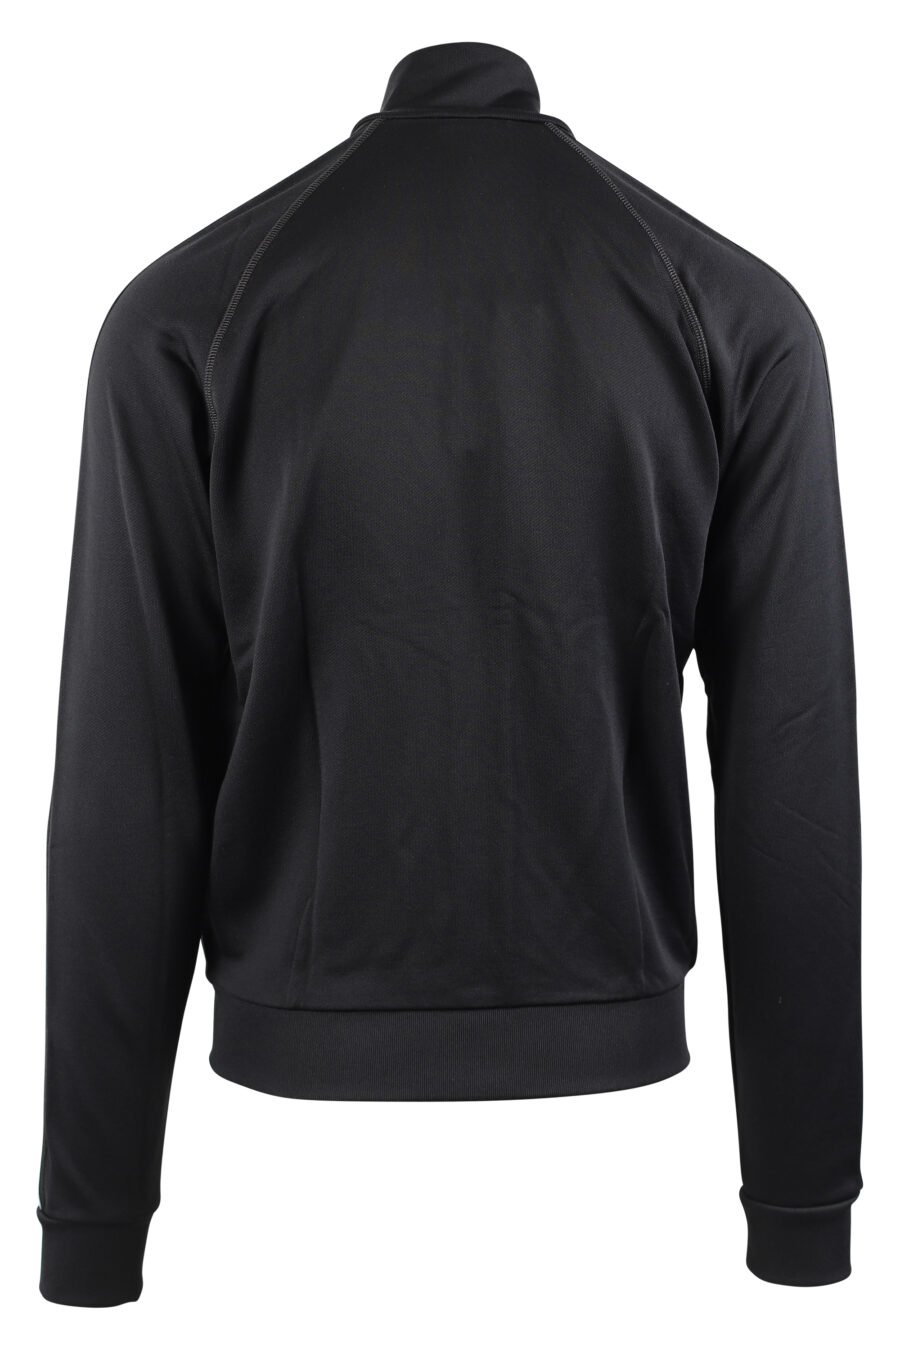 Sweat noir zippé avec logo blanc sur les manches - IMG 0436